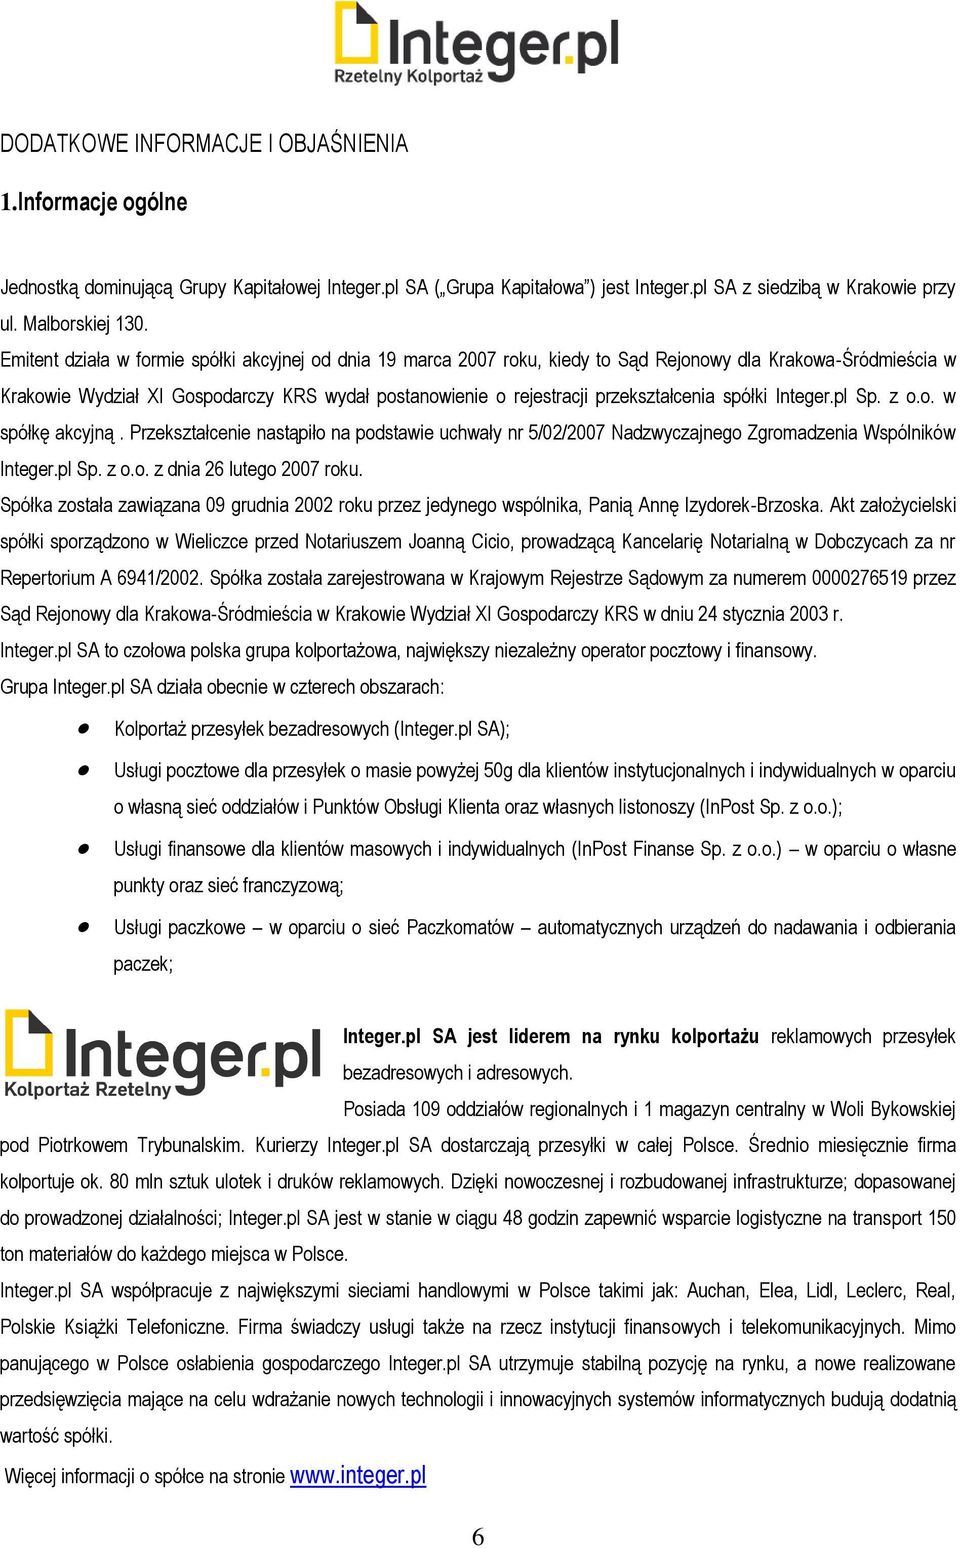 przekształcenia spółki Integer.pl Sp. z o.o. w spółkę akcyjną. Przekształcenie nastąpiło na podstawie uchwały nr 5/02/2007 Nadzwyczajnego Zgromadzenia Wspólników Integer.pl Sp. z o.o. z dnia 26 lutego 2007 roku.